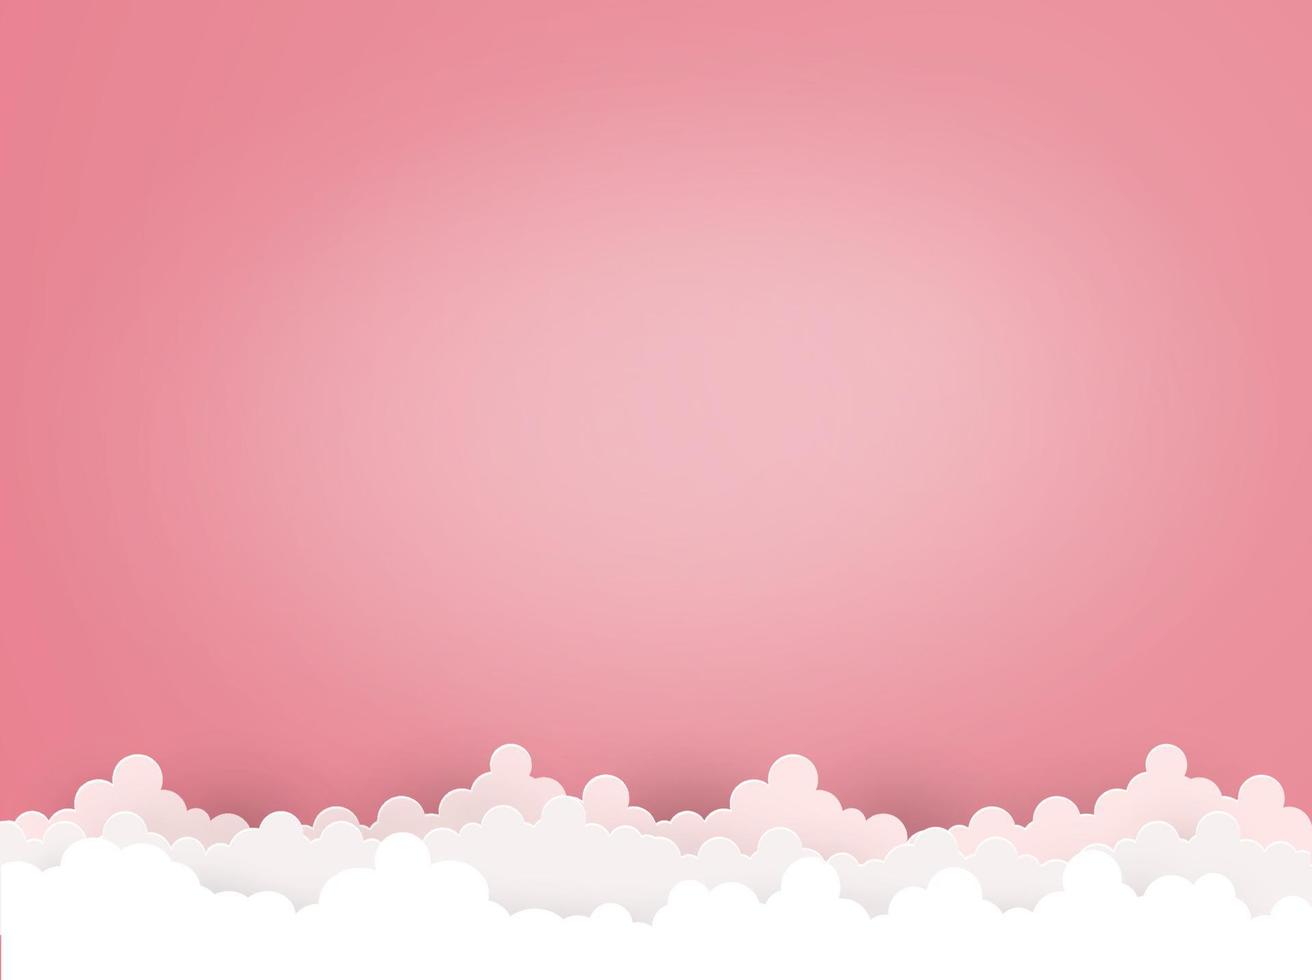 nube sobre fondo rojo claro estilo de arte de papel.ilustración de elemento de diseño vectorialnube sobre fondo rojo claro estilo de arte de papel.ilustración de elemento de diseño vectorial vector